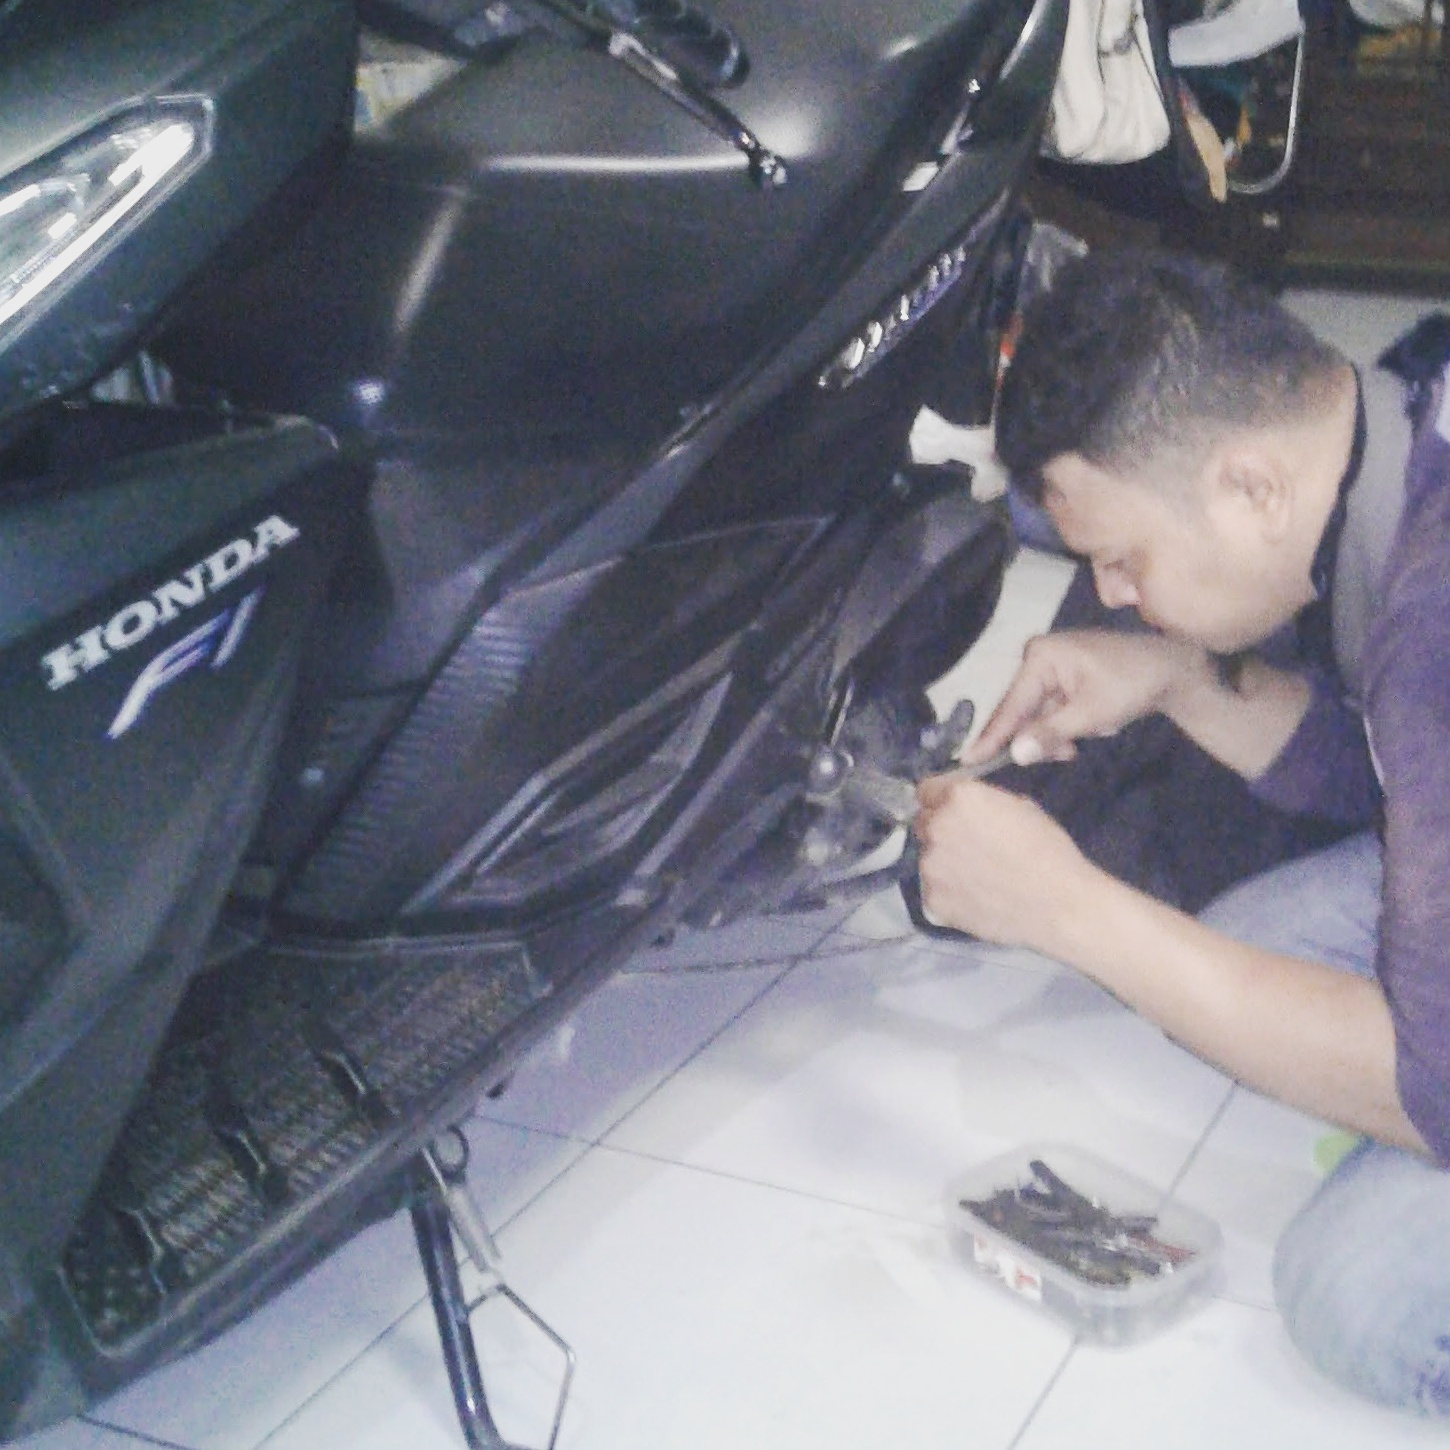 Kunci Motor Honda Vario Hilang Di Daerah Sawangan Kota Depok Ahli